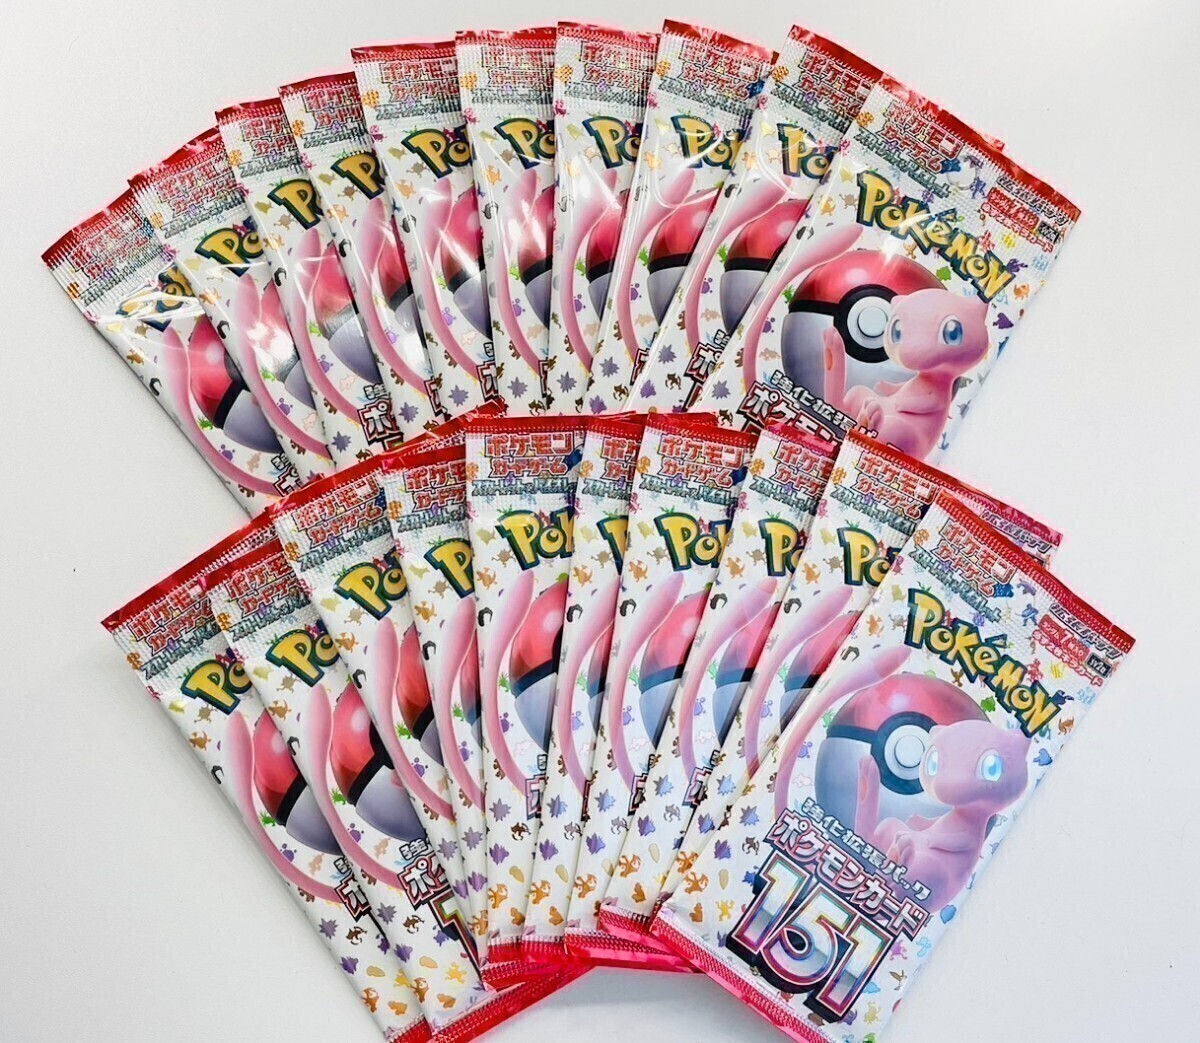 1 jpy start Pokemon Card Game scarlet & violet enhancing pack 151 rose pack 20 pack set sale 